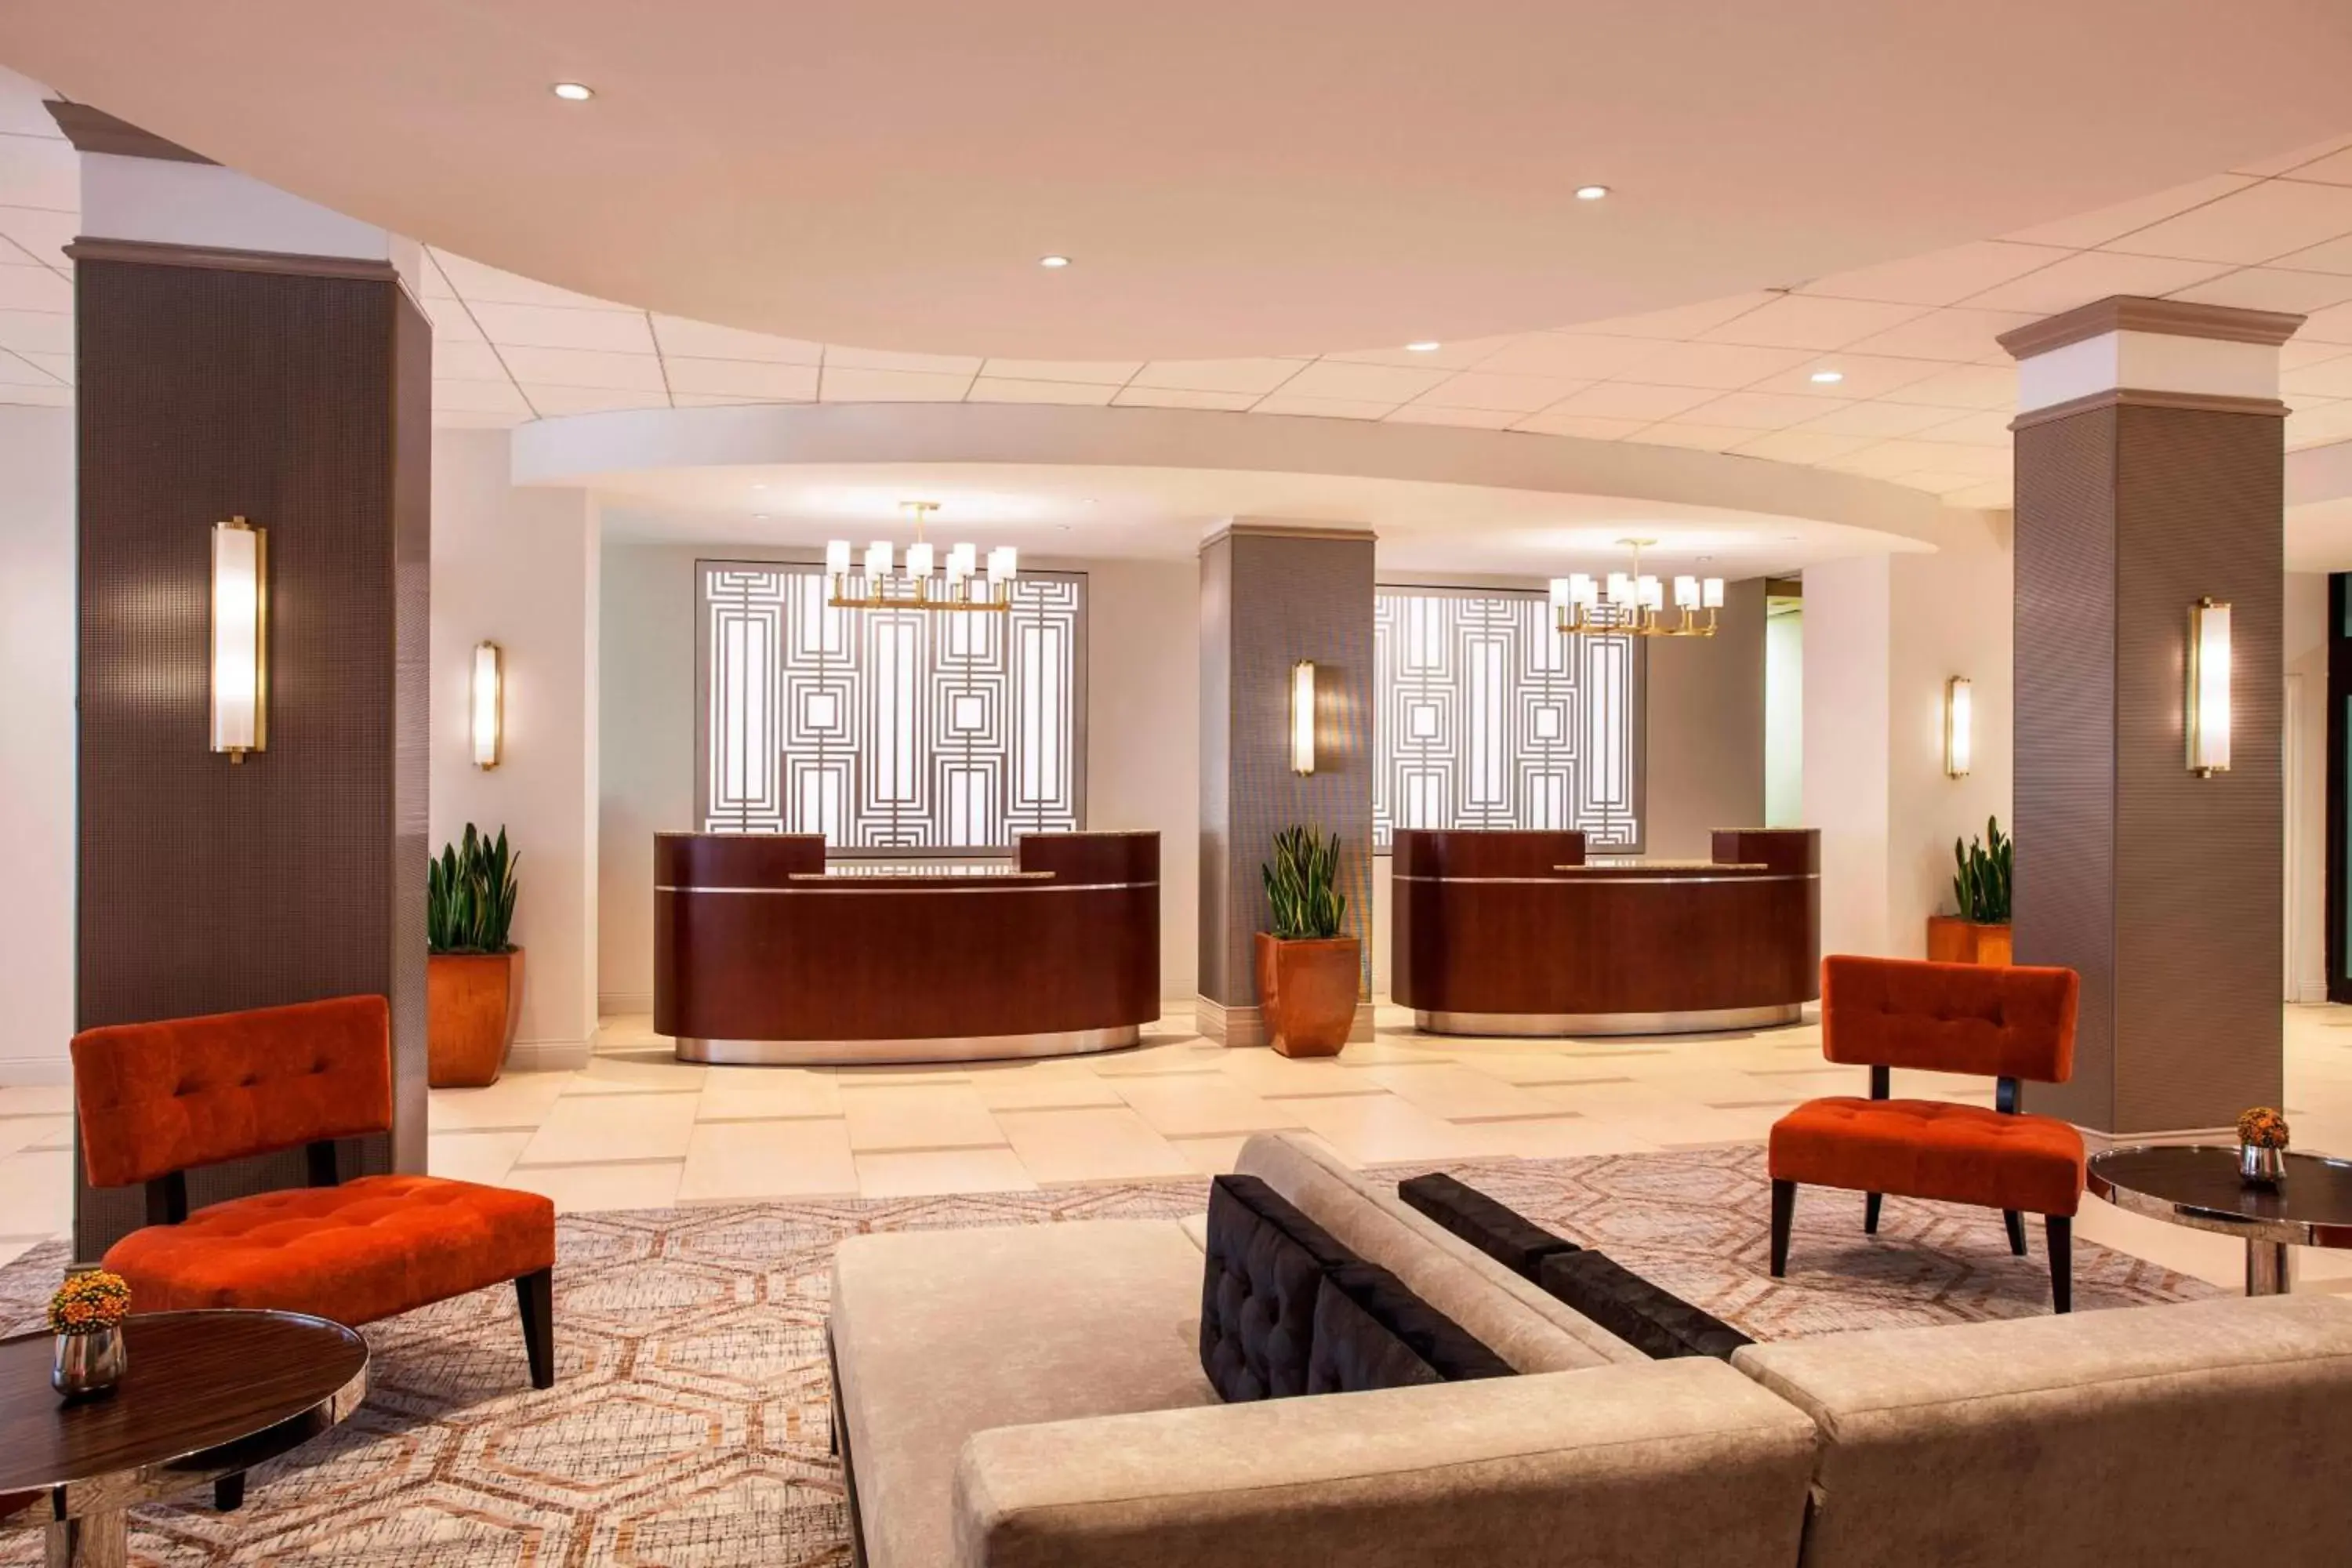 Lobby or reception, Lobby/Reception in Sheraton Philadelphia University City Hotel